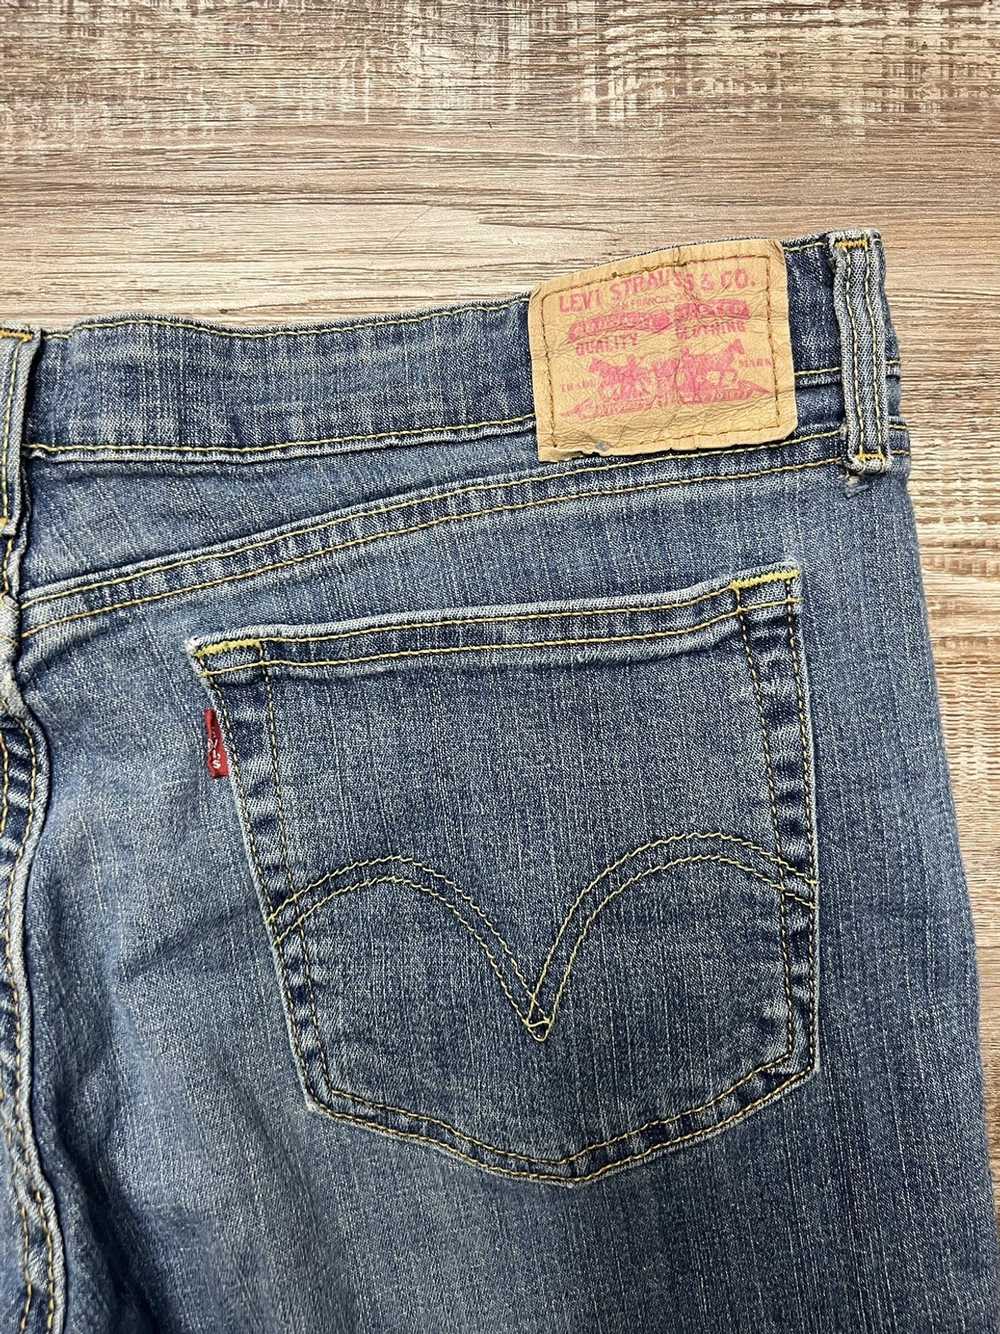 Levi's levi’s super-low boot cut blue jeans - image 6